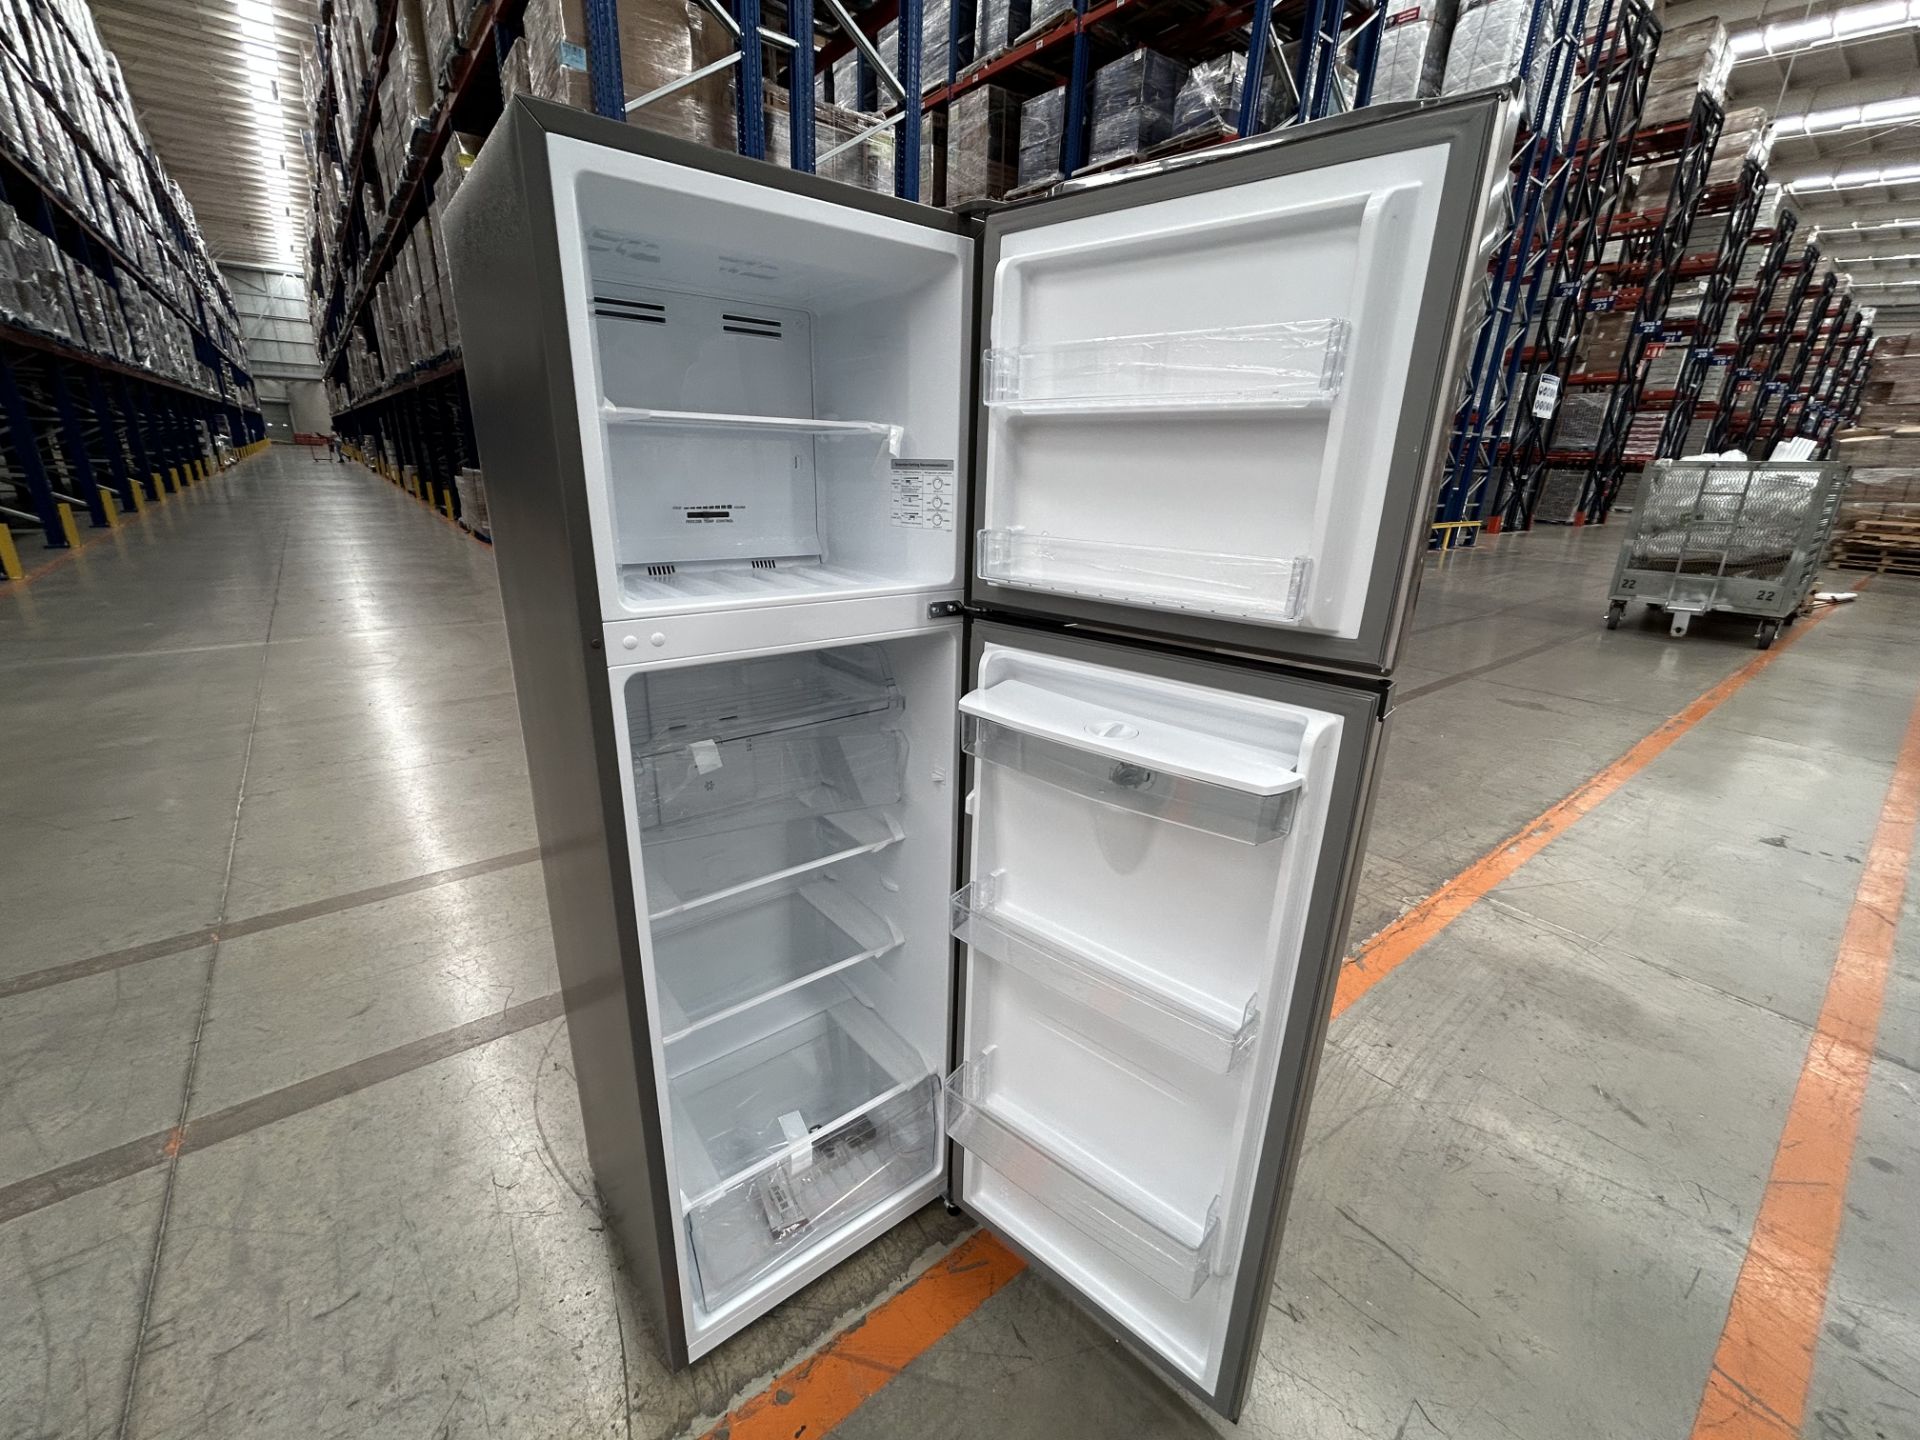 Lote de 2 refrigeradores contiene: 1 refrigerador con dispensador de agua Marca HISENSE, Modelo RT9 - Image 6 of 7